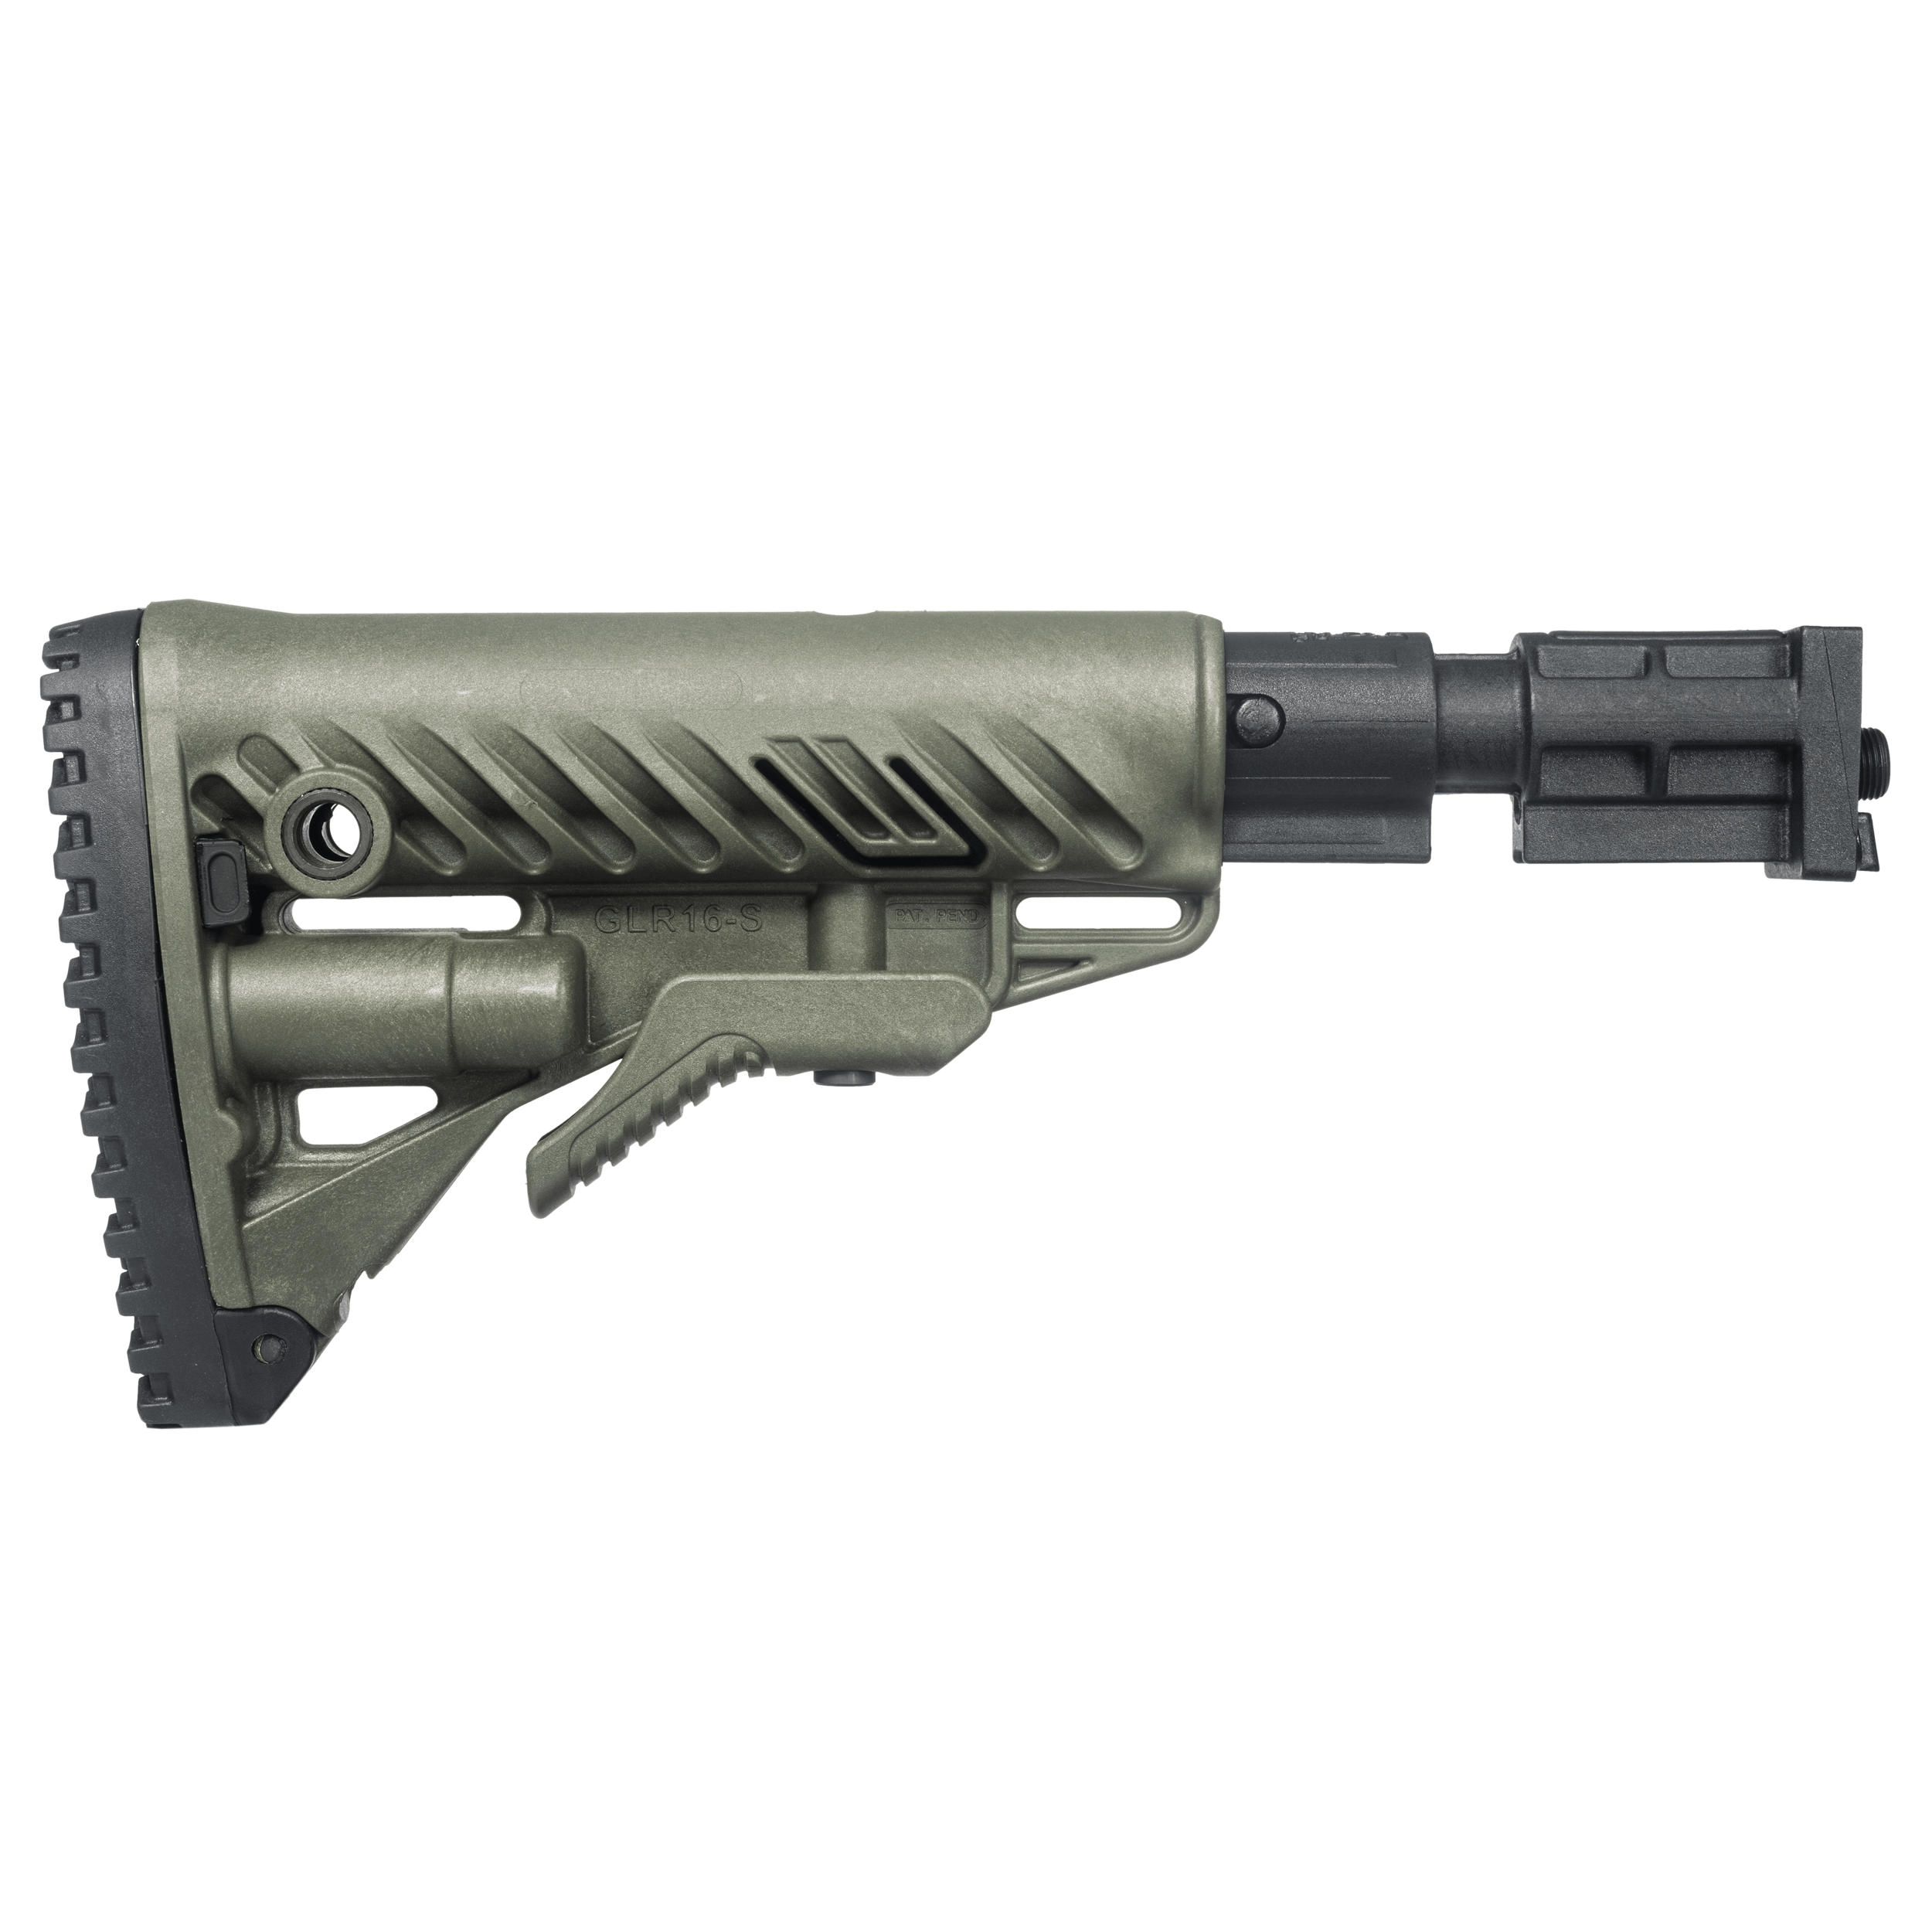 VZ58 Rückstoßdämpfer System / AR15 Stil